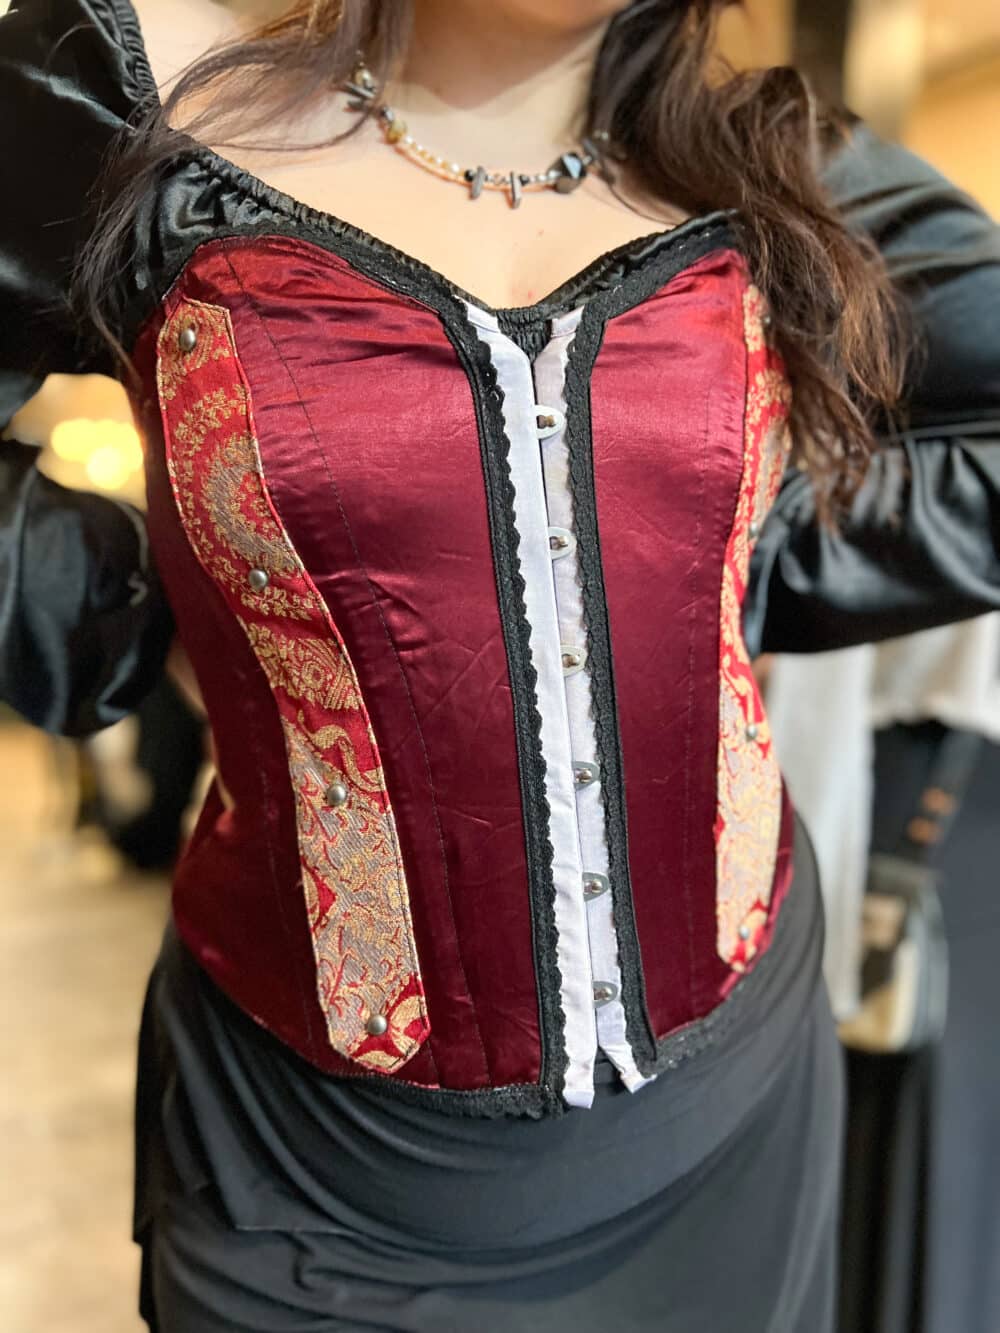 A Crimson textile renaissance bustier with paisley accents & black lace trim.